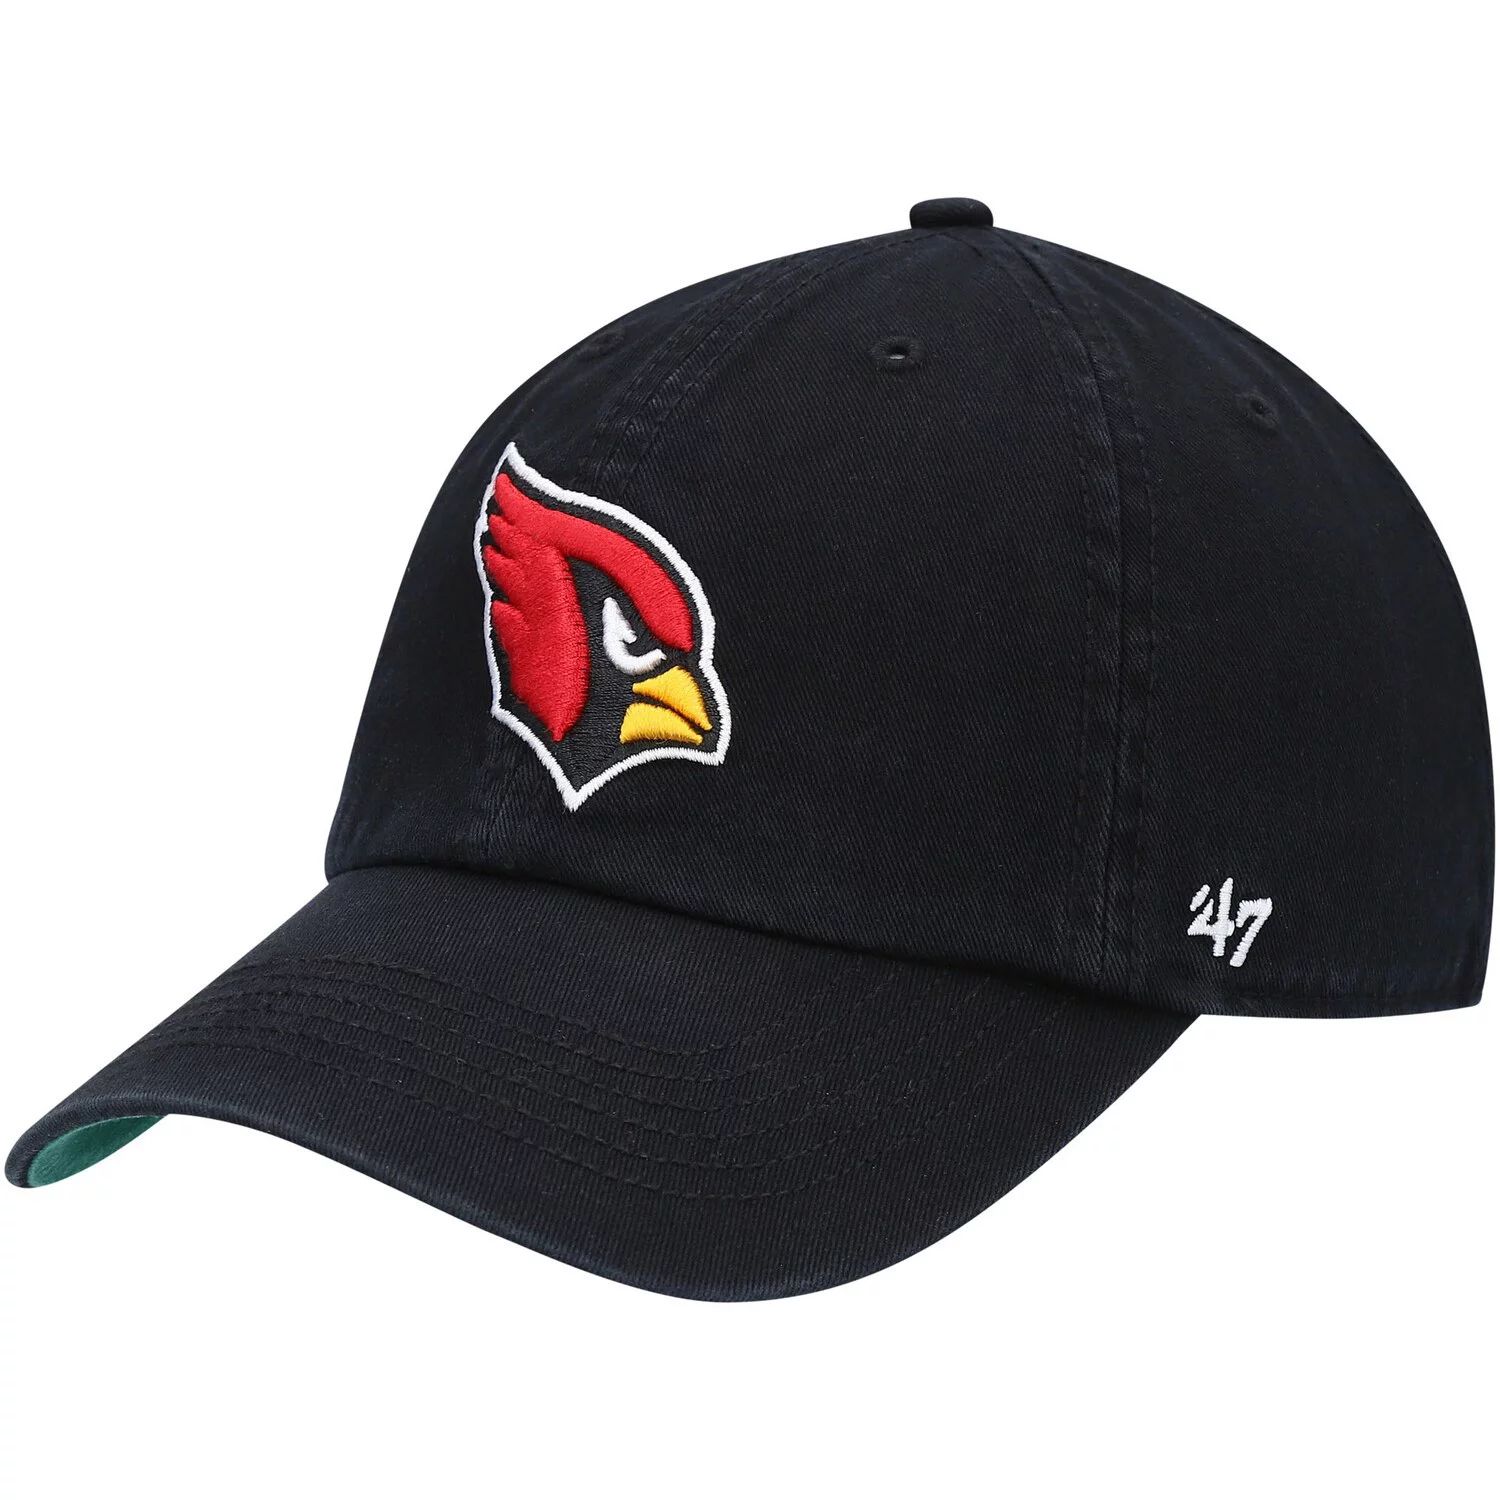 Мужская черная приталенная шляпа с логотипом франшизы Arizona Cardinals '47